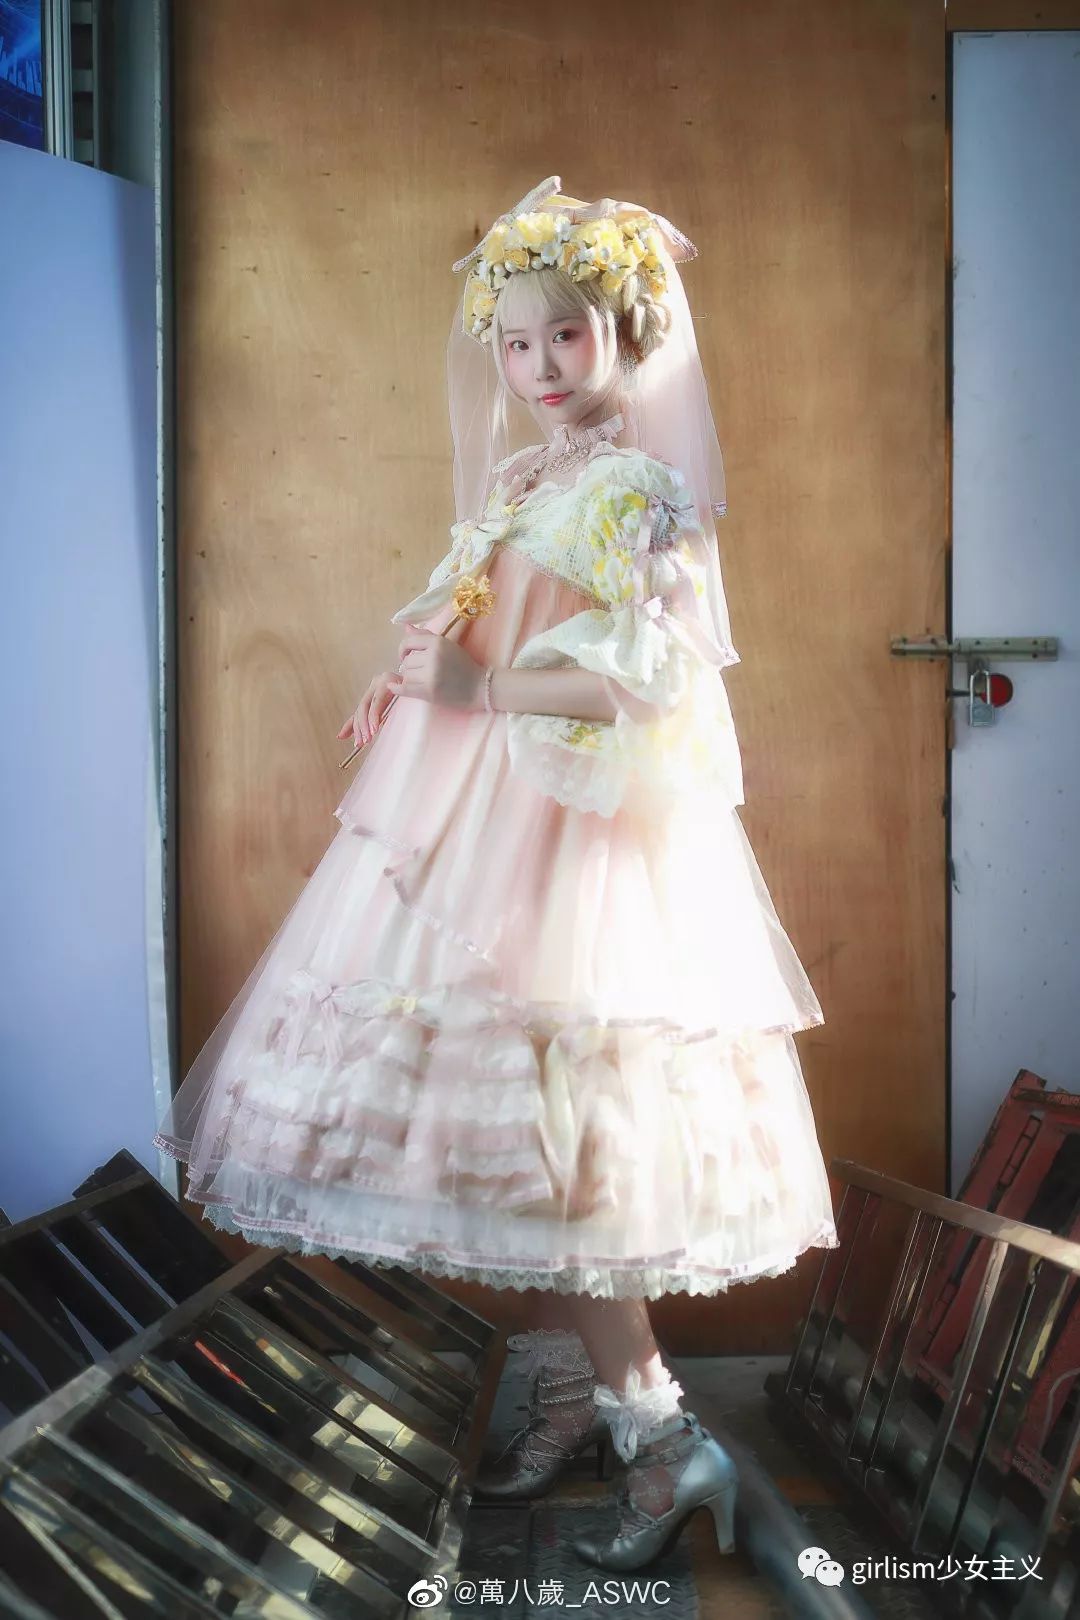 灵瑶reiyou与和平之春齐名的天国少女,同样是一条既美且孕的裙子.